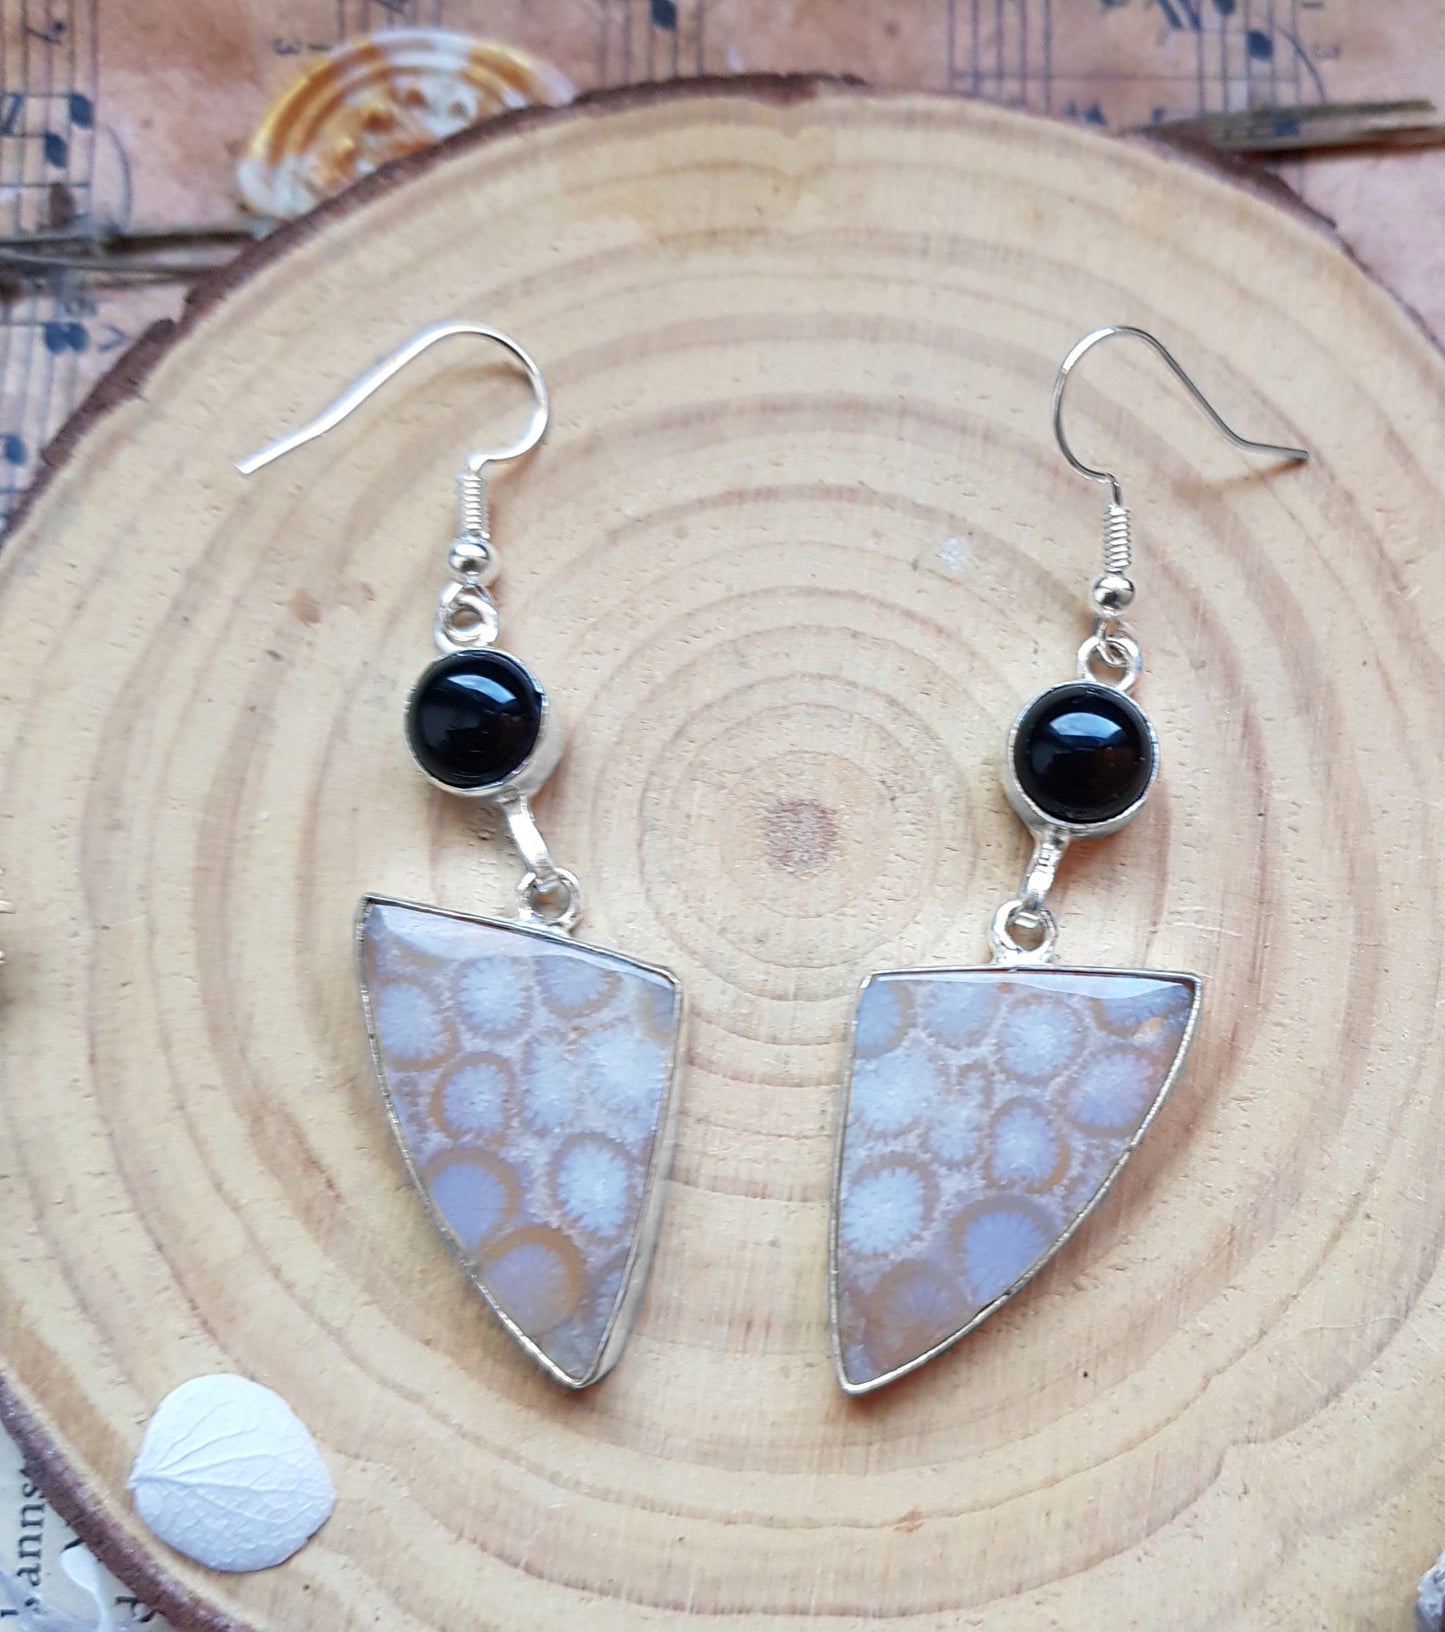 Black Onyx Statement Earrings Dangle Earrings In Sterling Silver Unique Gift For Women GypsyJewelry